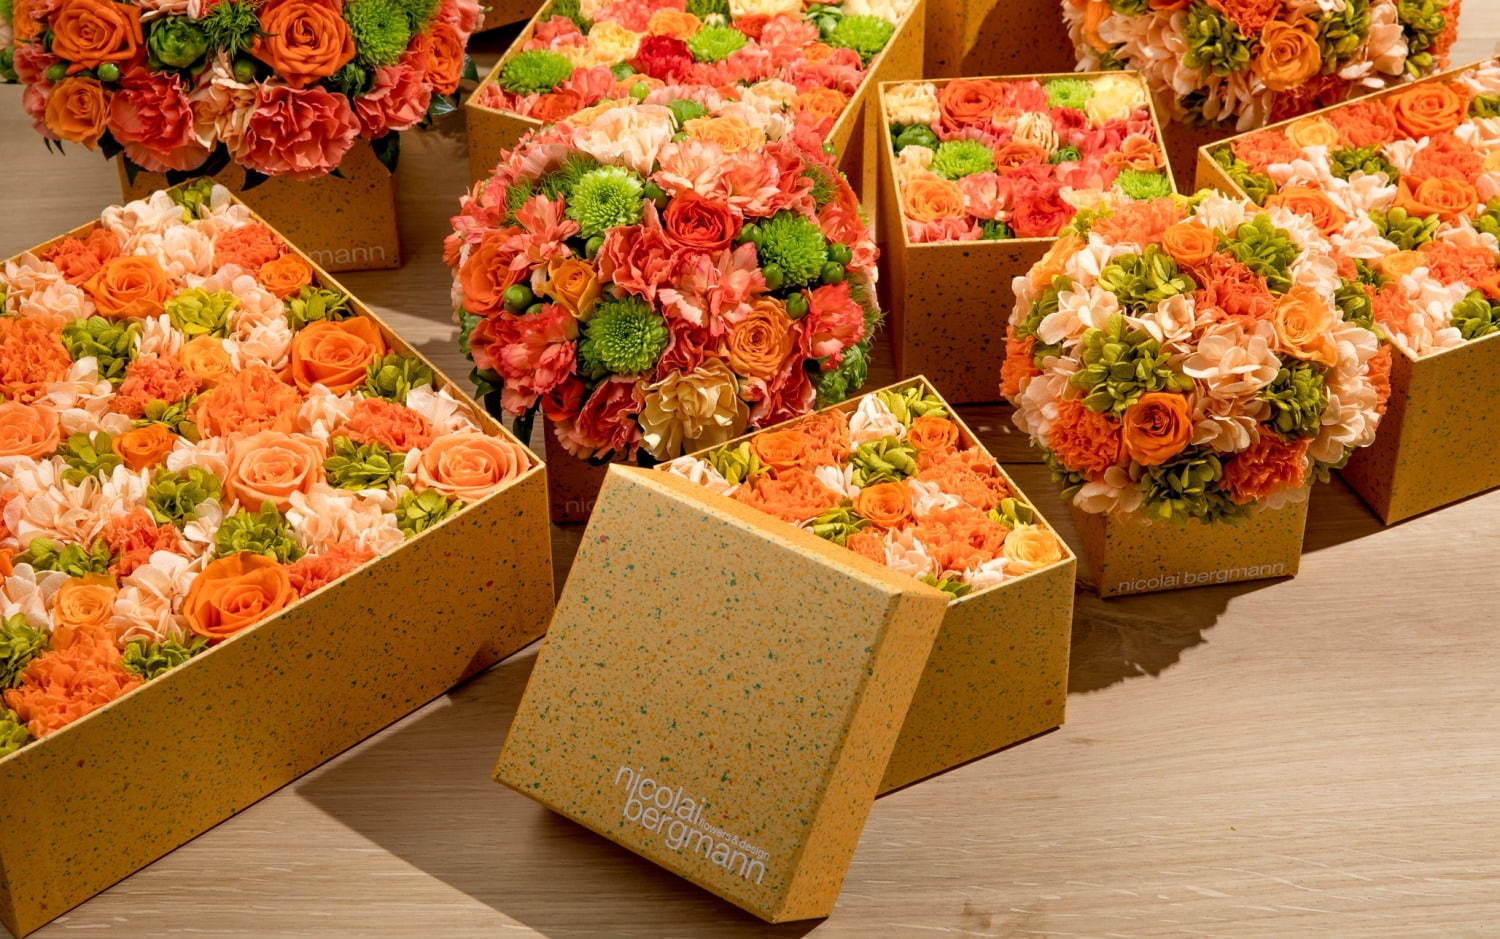 ニコライ バーグマン夏限定フラワーボックス、オレンジ×グリーンの花々をドット柄ボックスに詰めて｜写真5